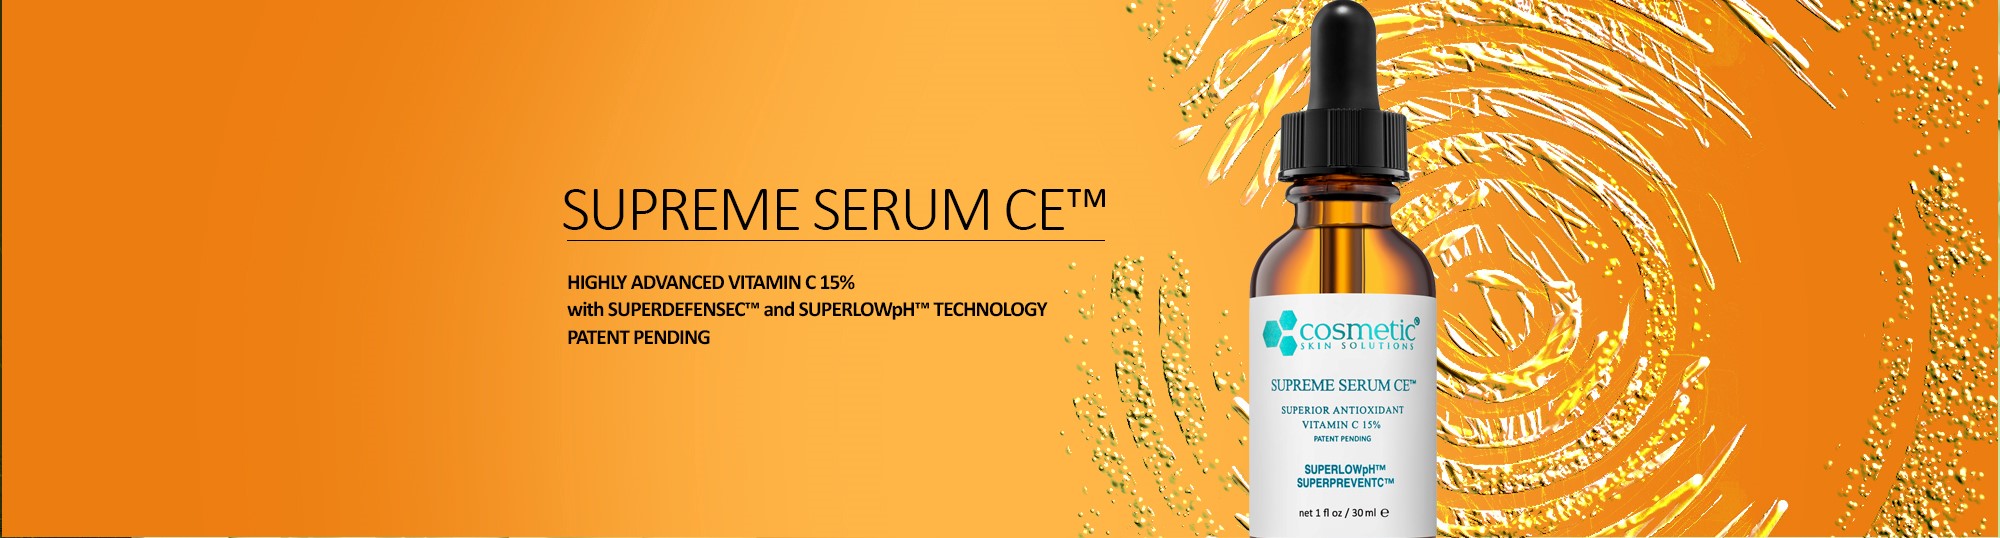 Supreme Serum CE™ | Patent Pending | #1 Best Vitamin C Serum